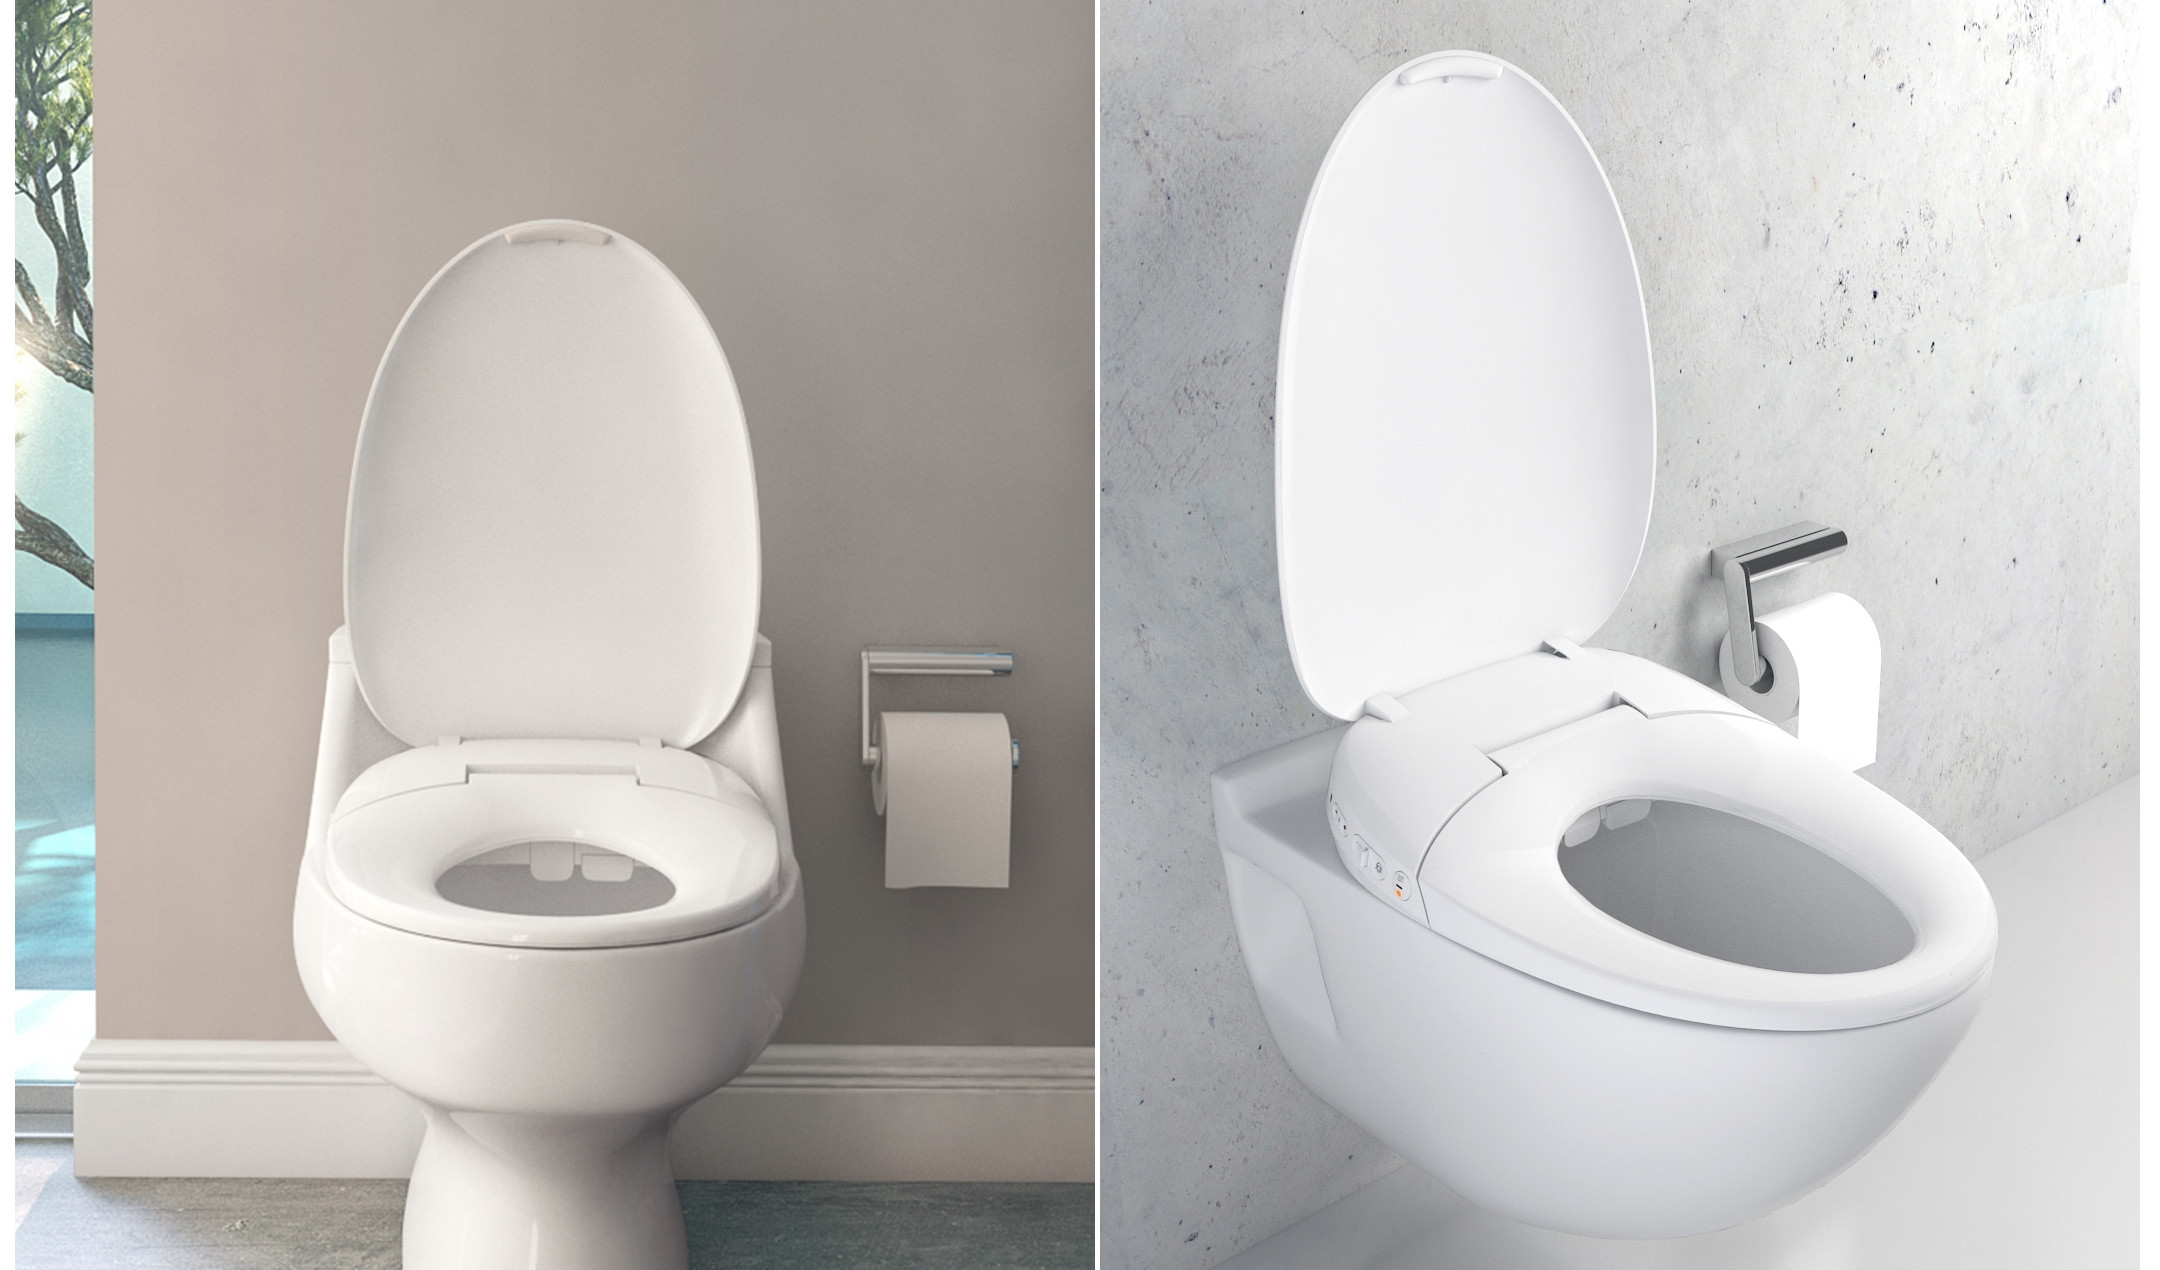 xiaomi-whale-spout-smart-toilet-cover-pro-6.jpg